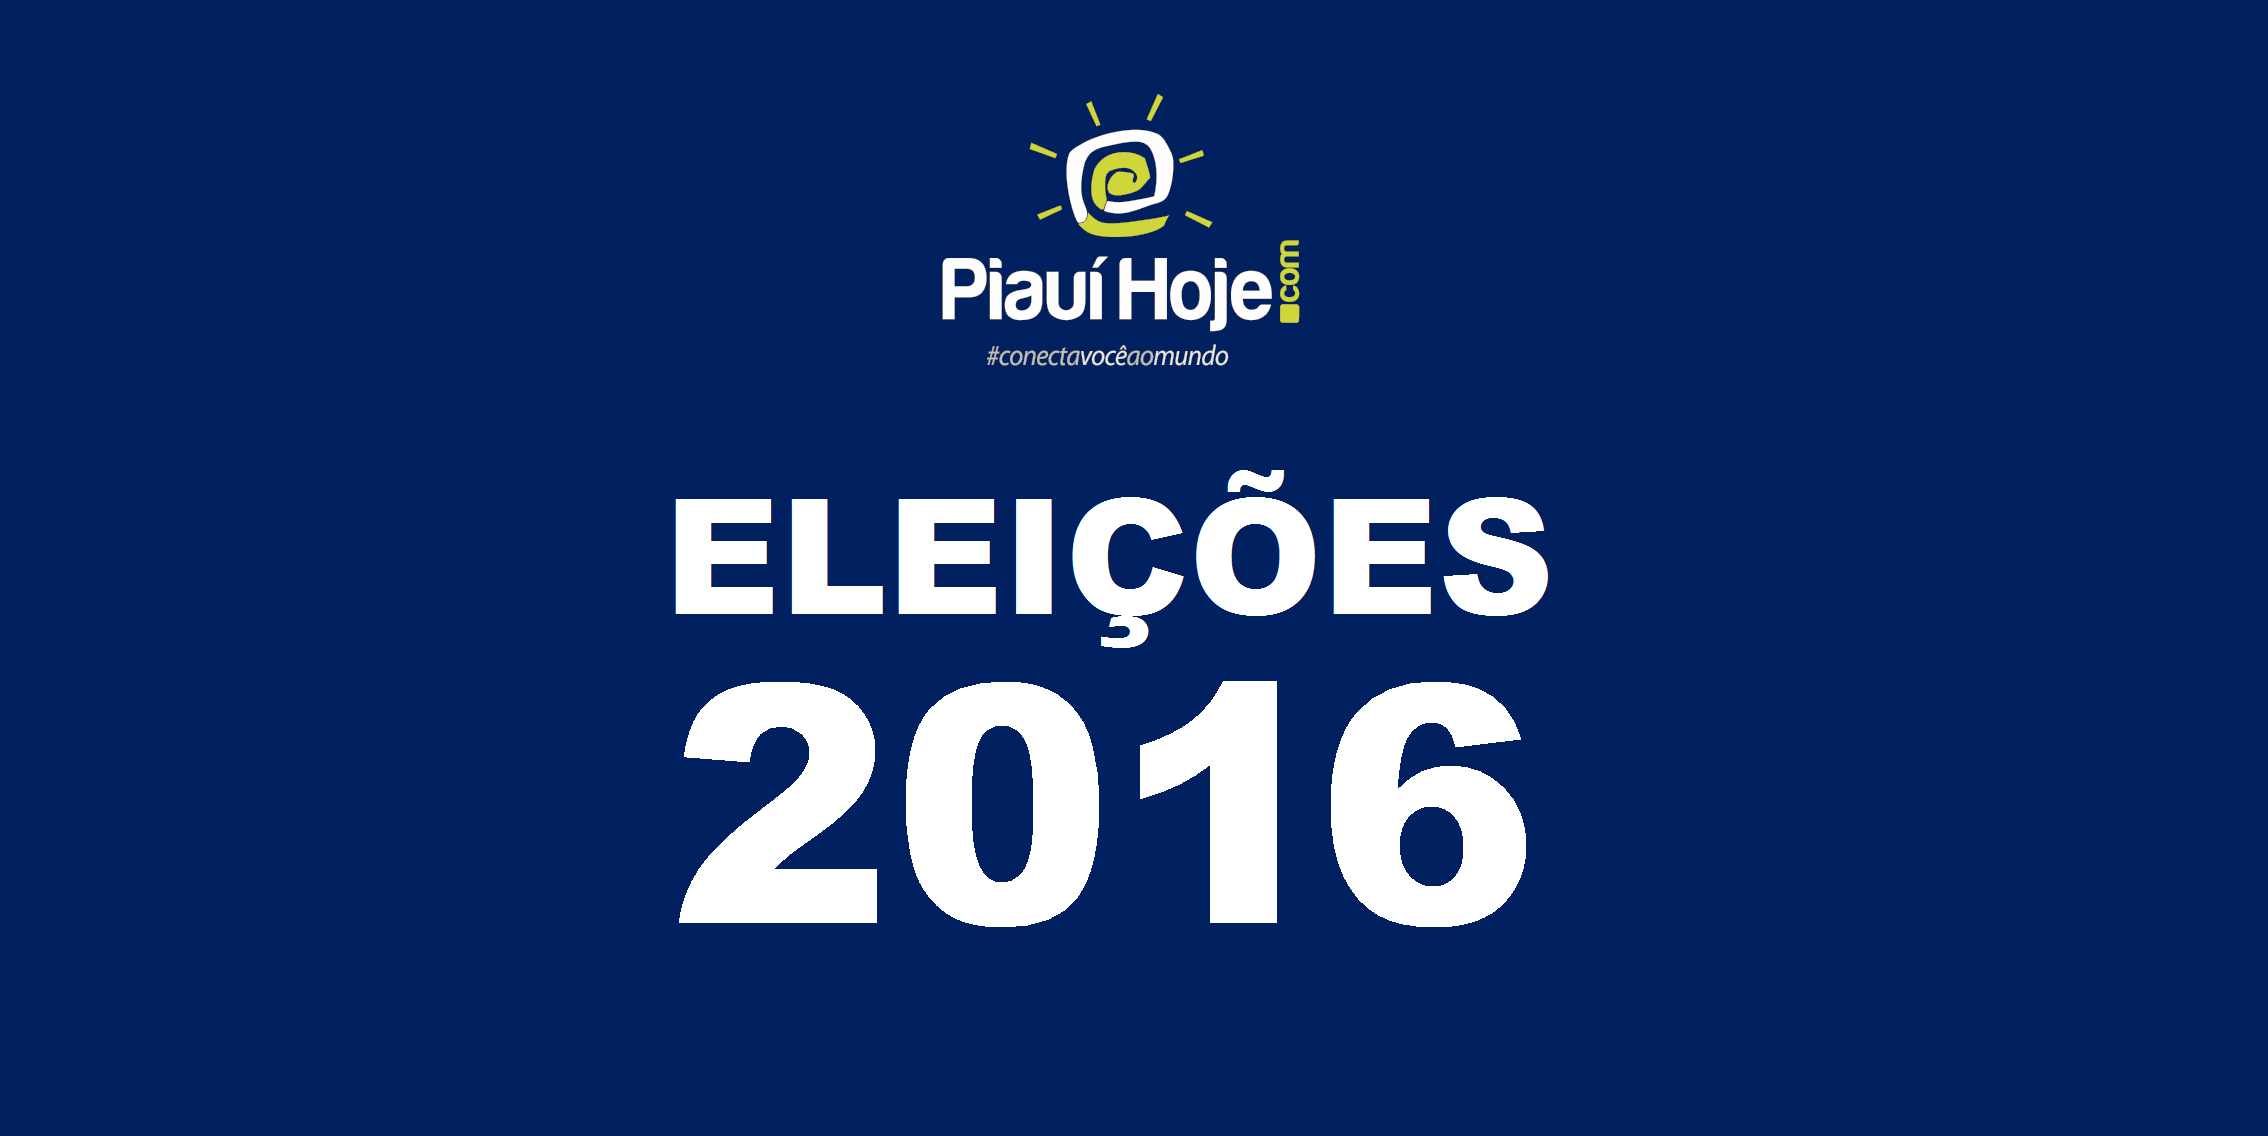 Eleições 2016